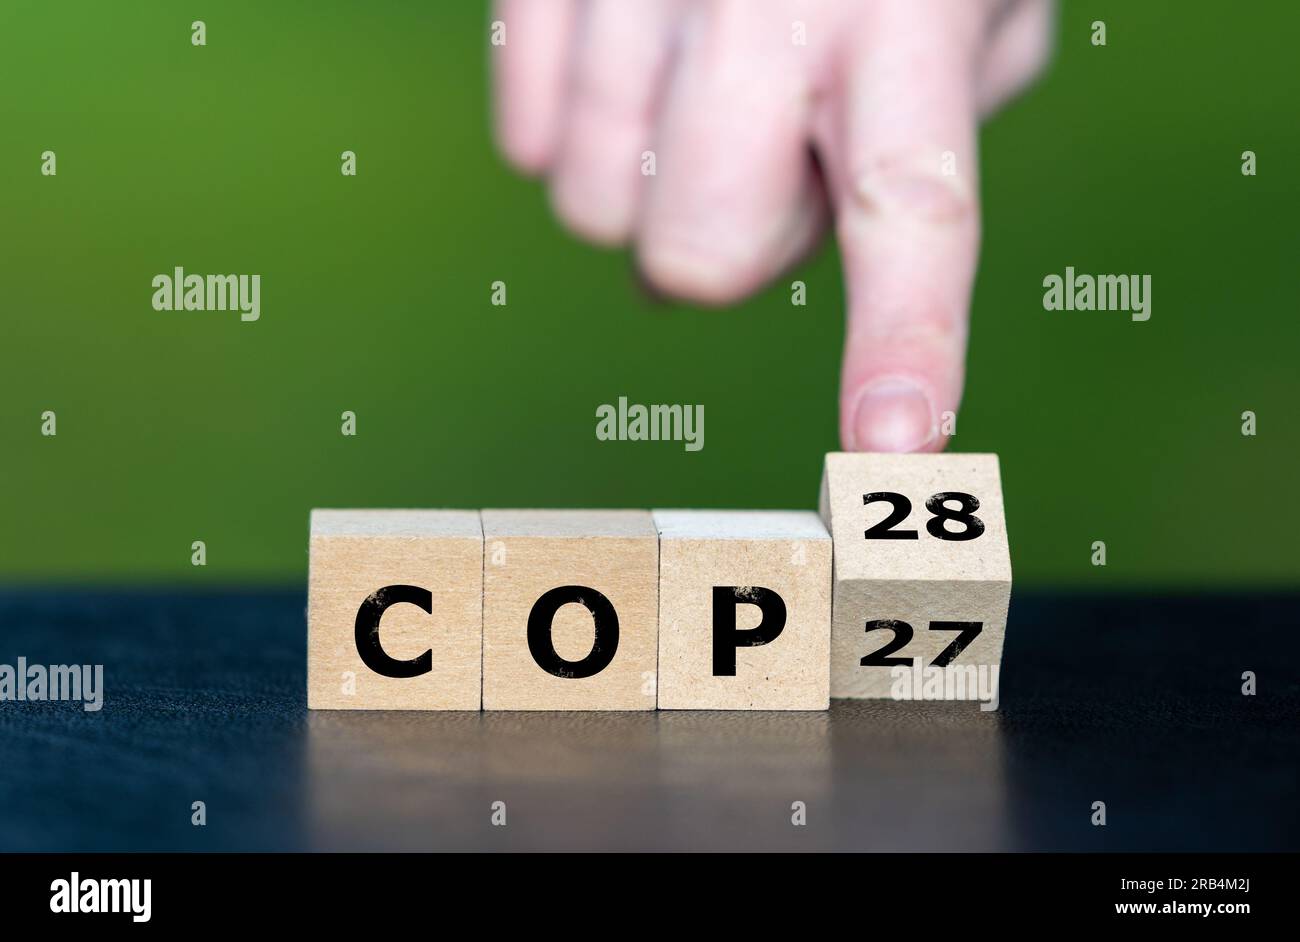 Symbole pour la prochaine conférence sur le climat. La main tourne les cubes et change l'expression 'COP27' en 'COP28'. Banque D'Images